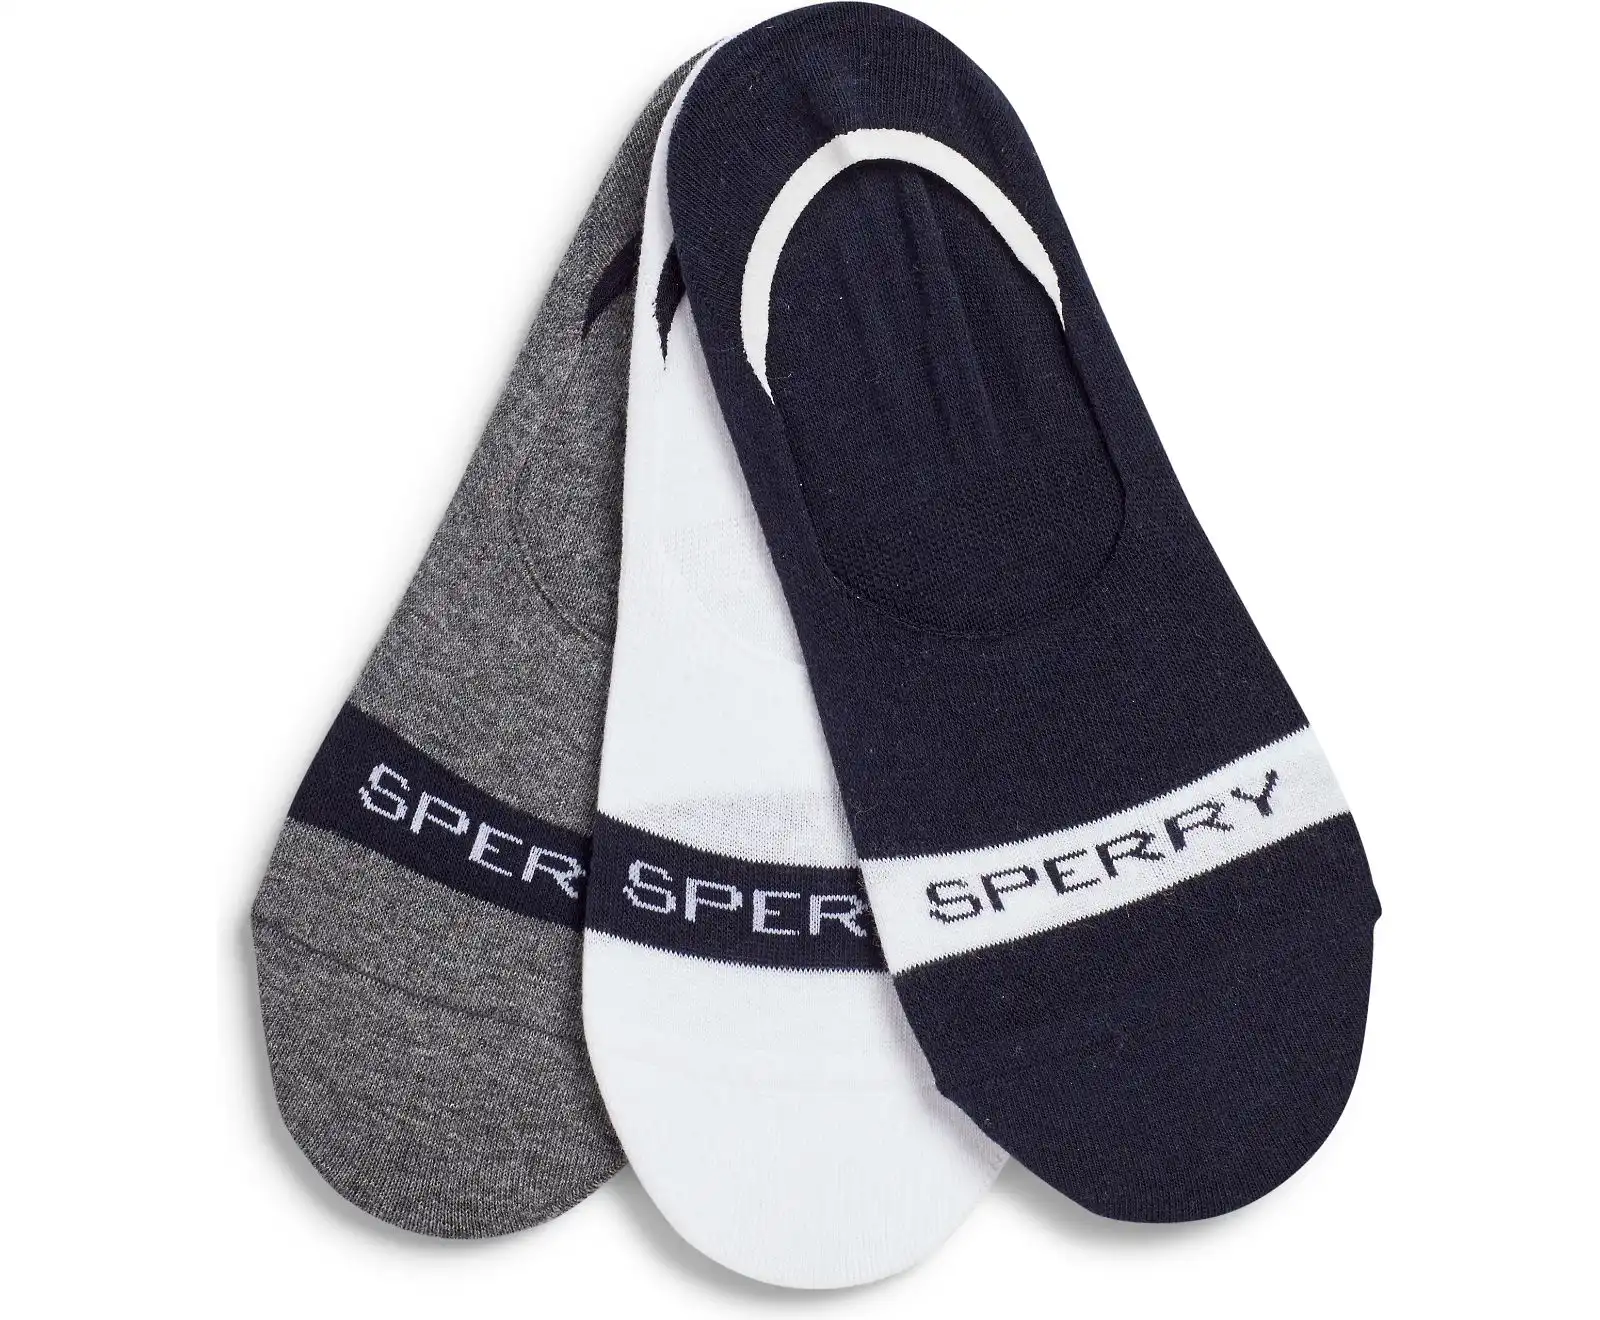 Sperry Boat Shoe Socks (3 Pack)